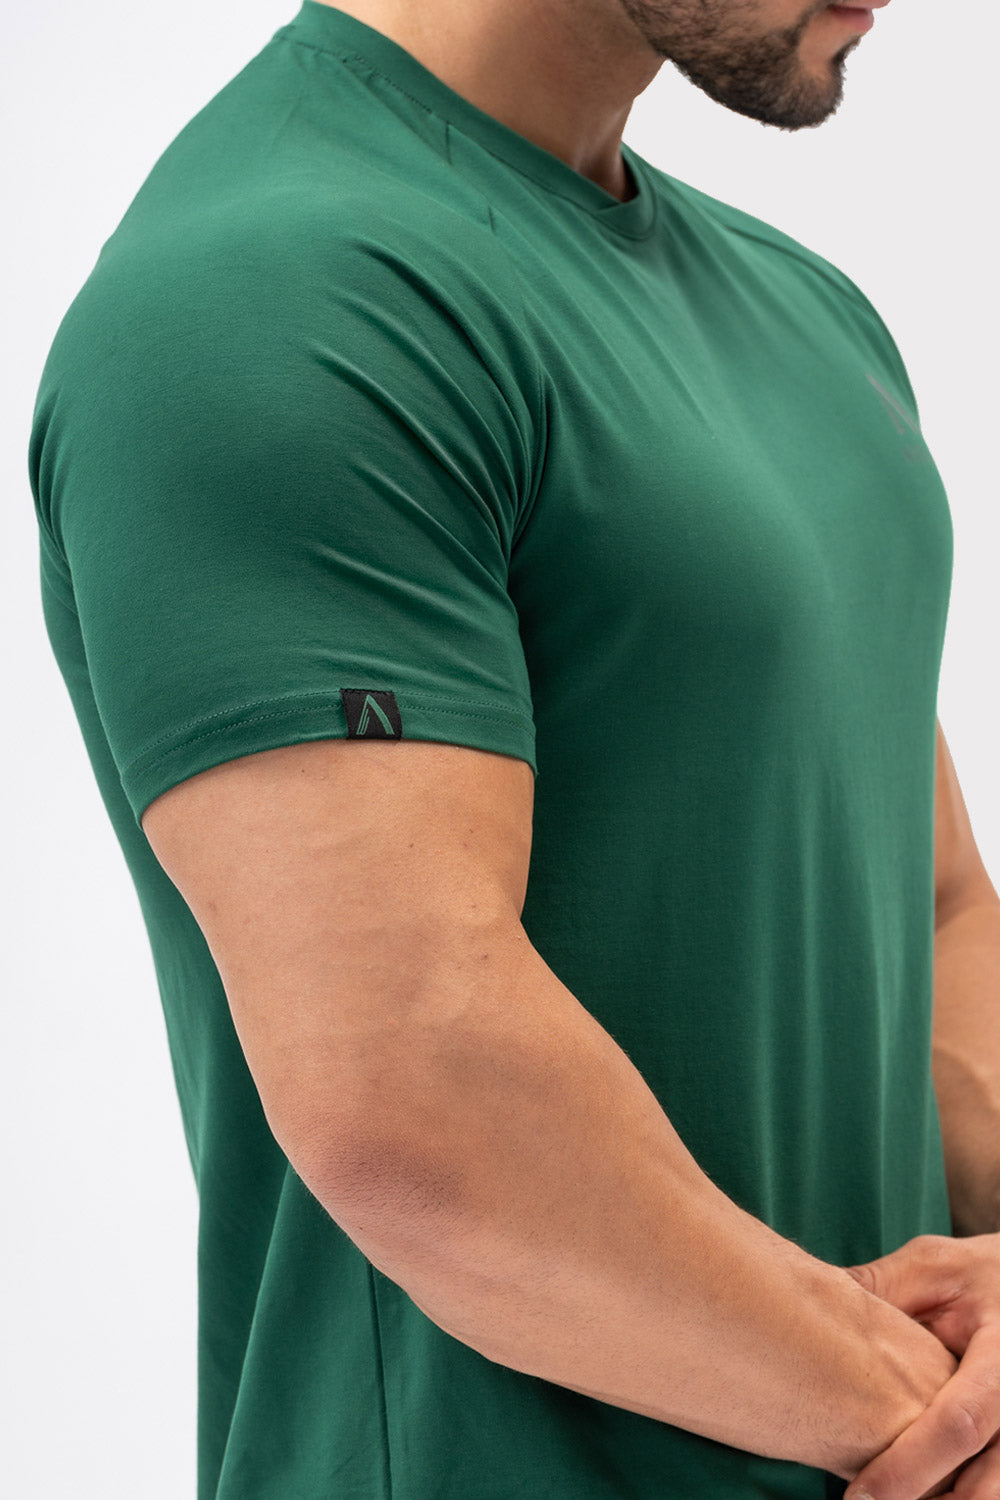 A CODE T-Shirt - Vert Foncé